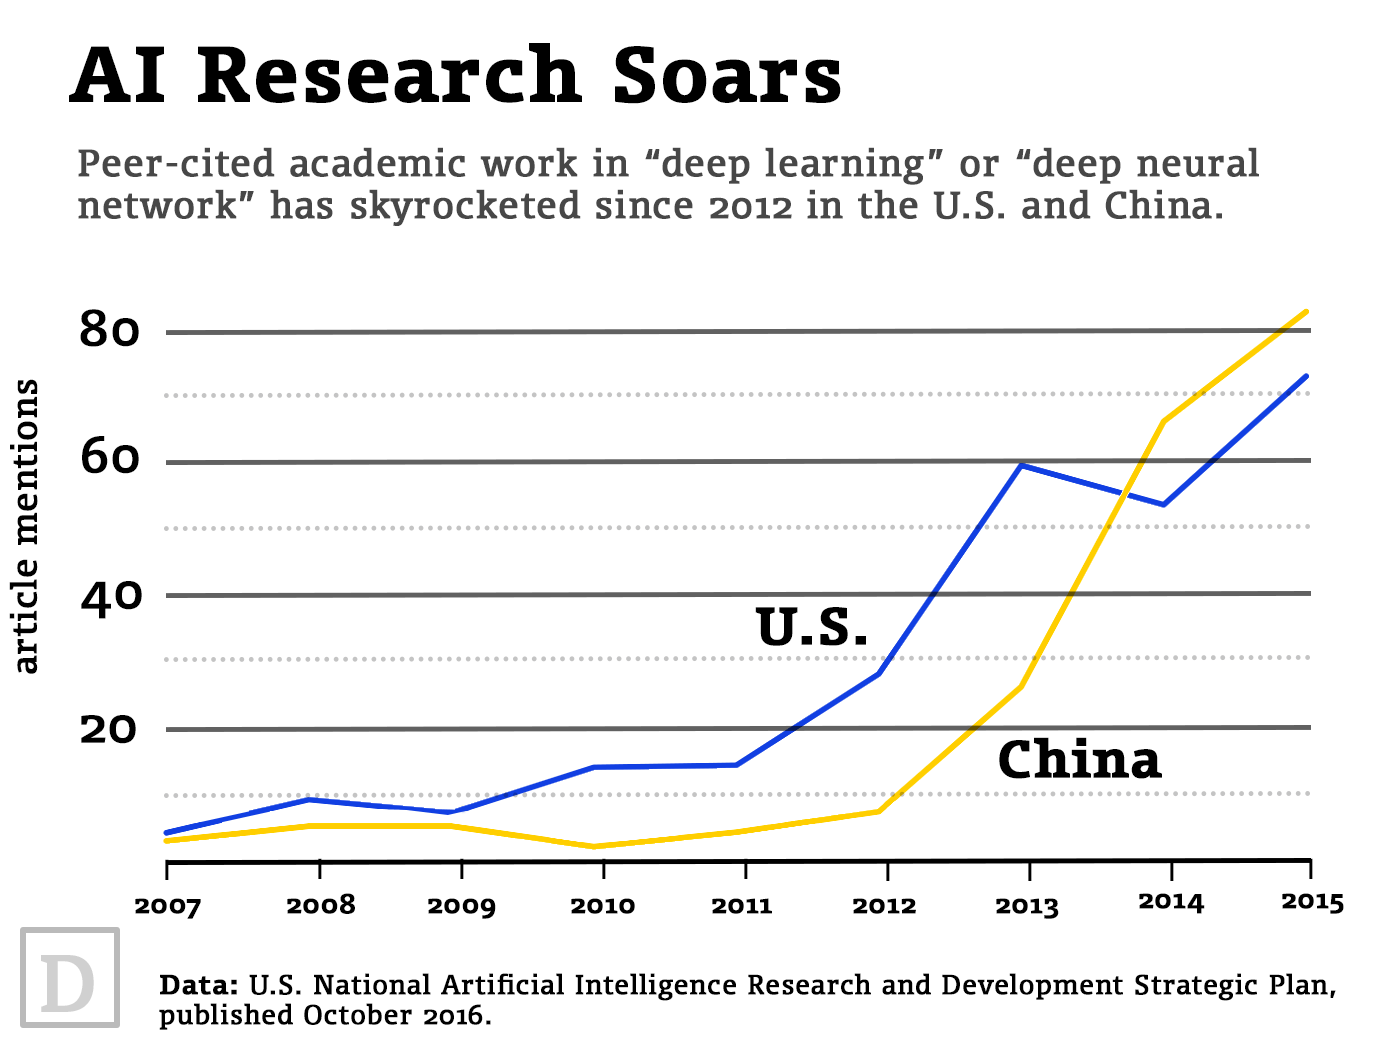 Potencjalne porównanie inwestowania w sztuczną inteligencję USA oraz Chin. Źródło: https://www.defenseone.com/feature/artificial-intelligence-pro-con/ 